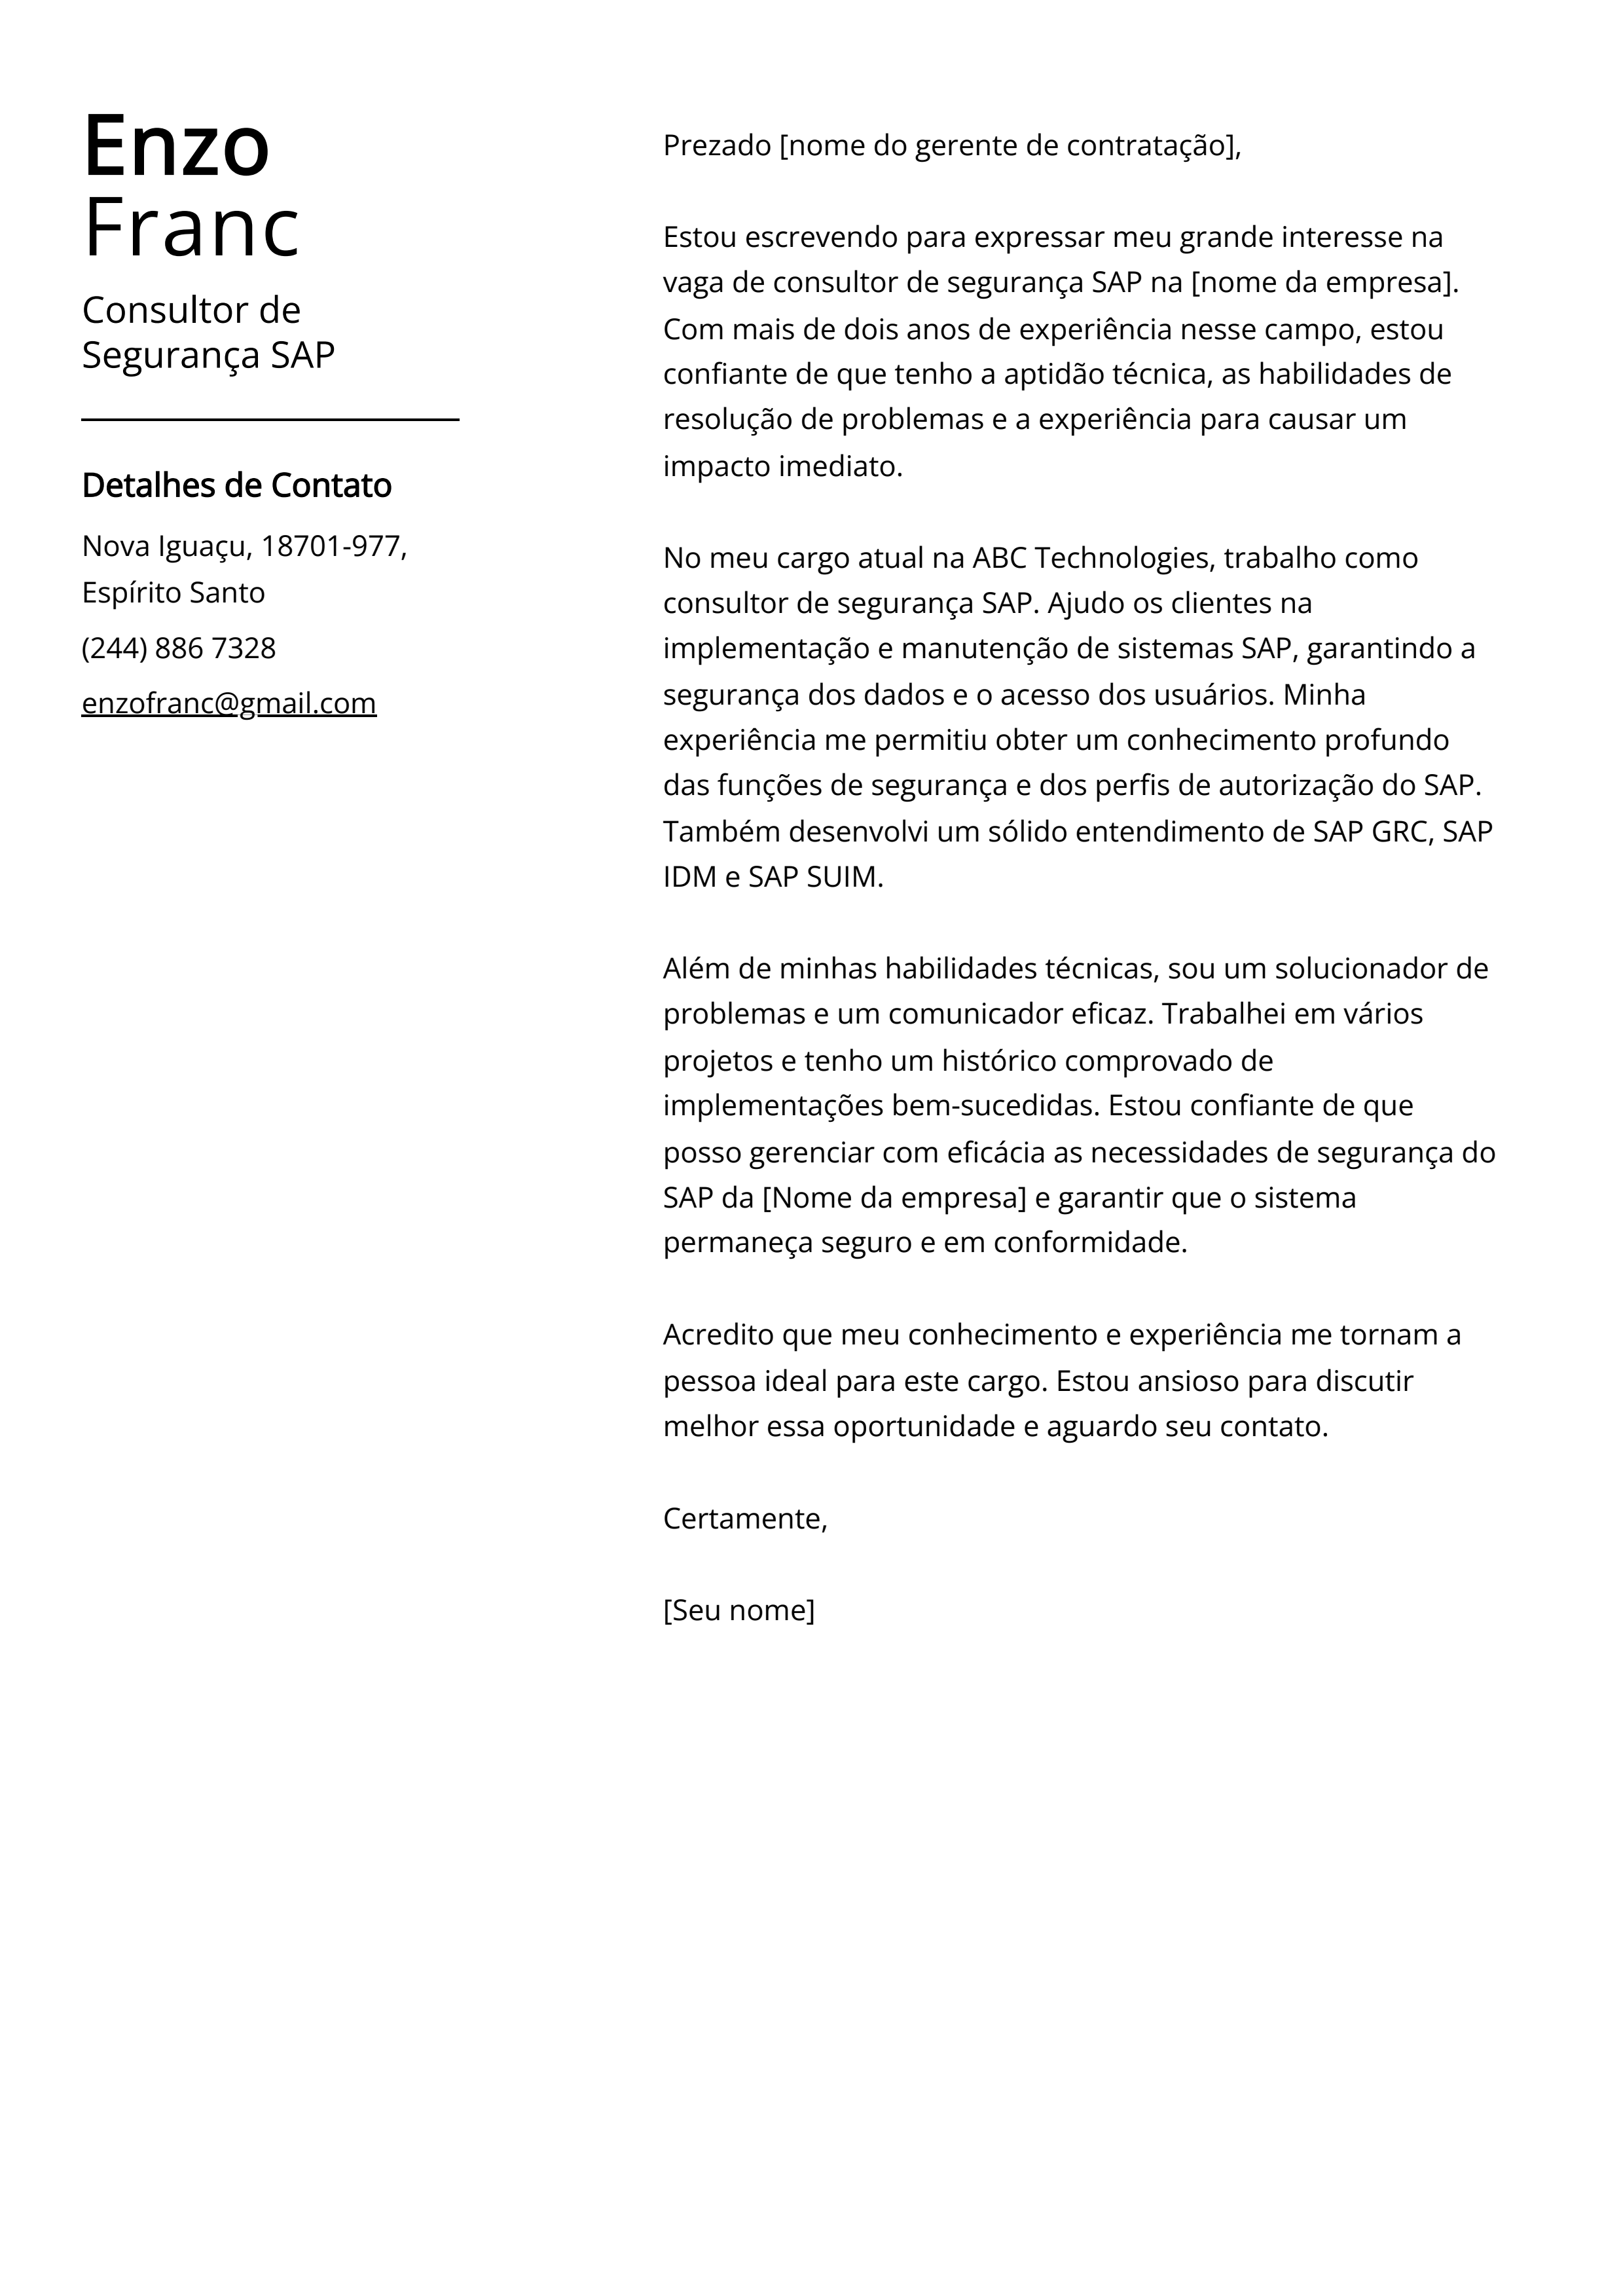 Exemplo de carta de apresentação do Consultor de Segurança SAP